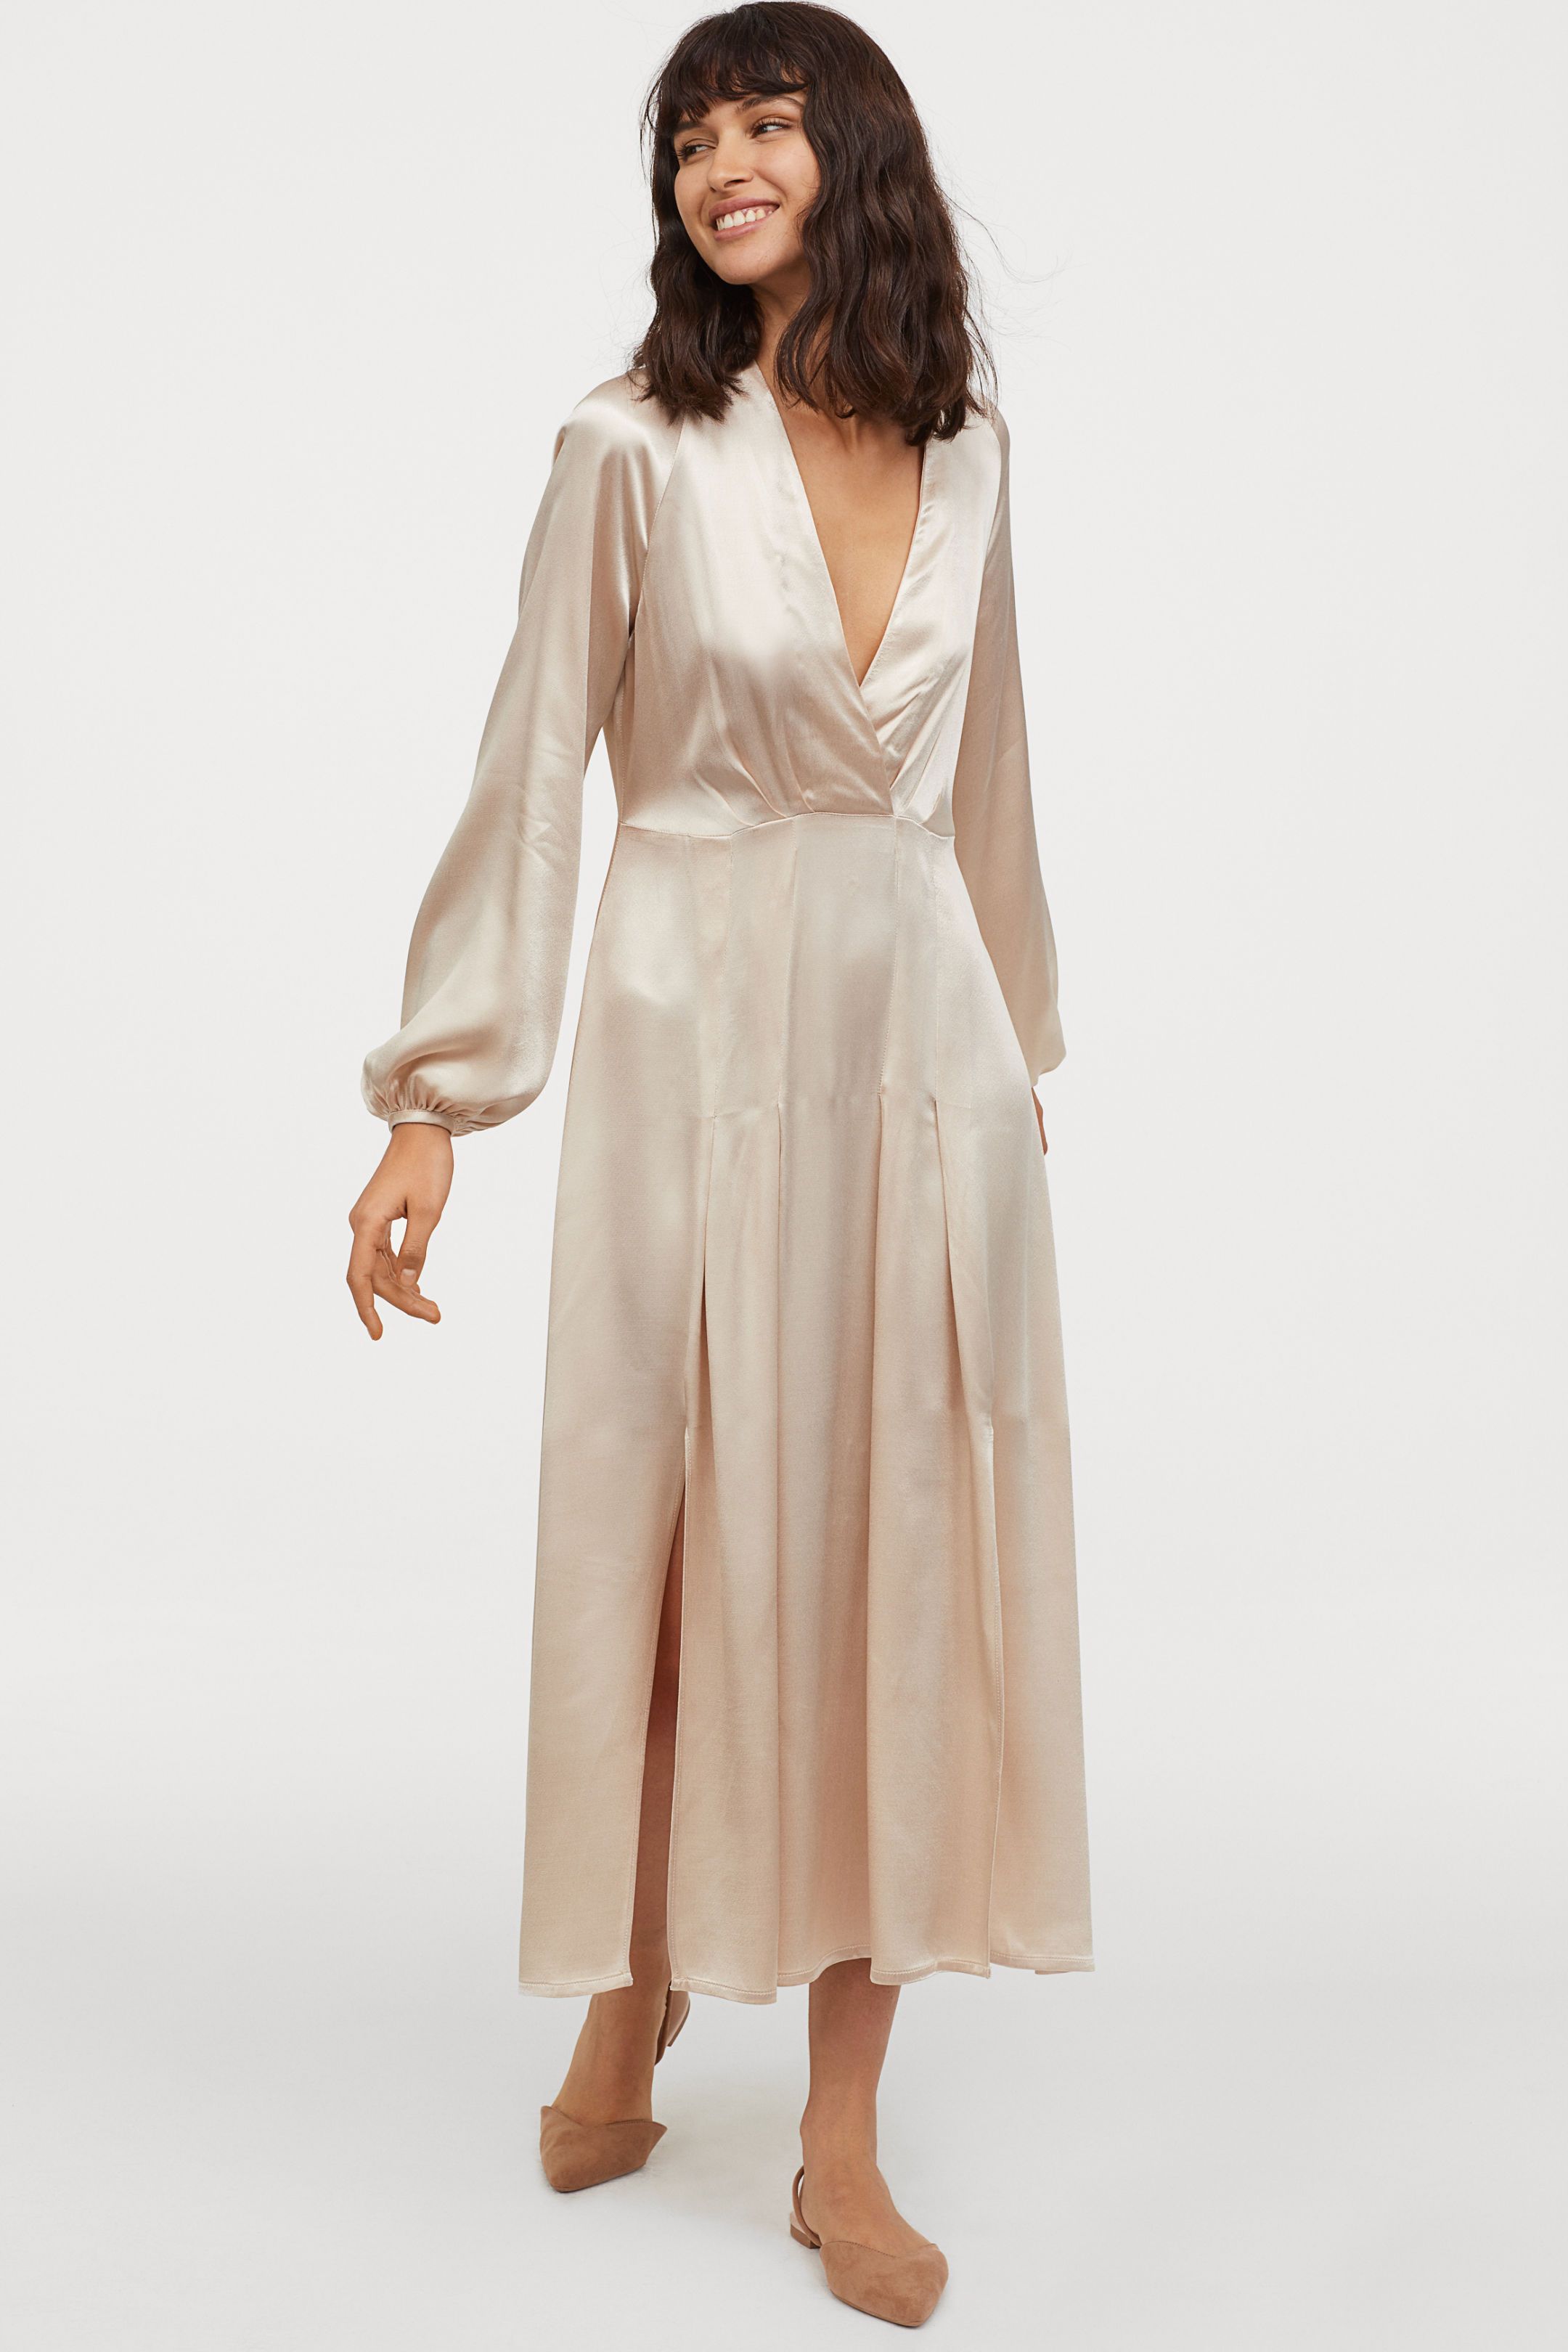 Vestido de novia de H&M que cuesta 60 euros - H&M vende un vestido de novia low-cost que enamorar